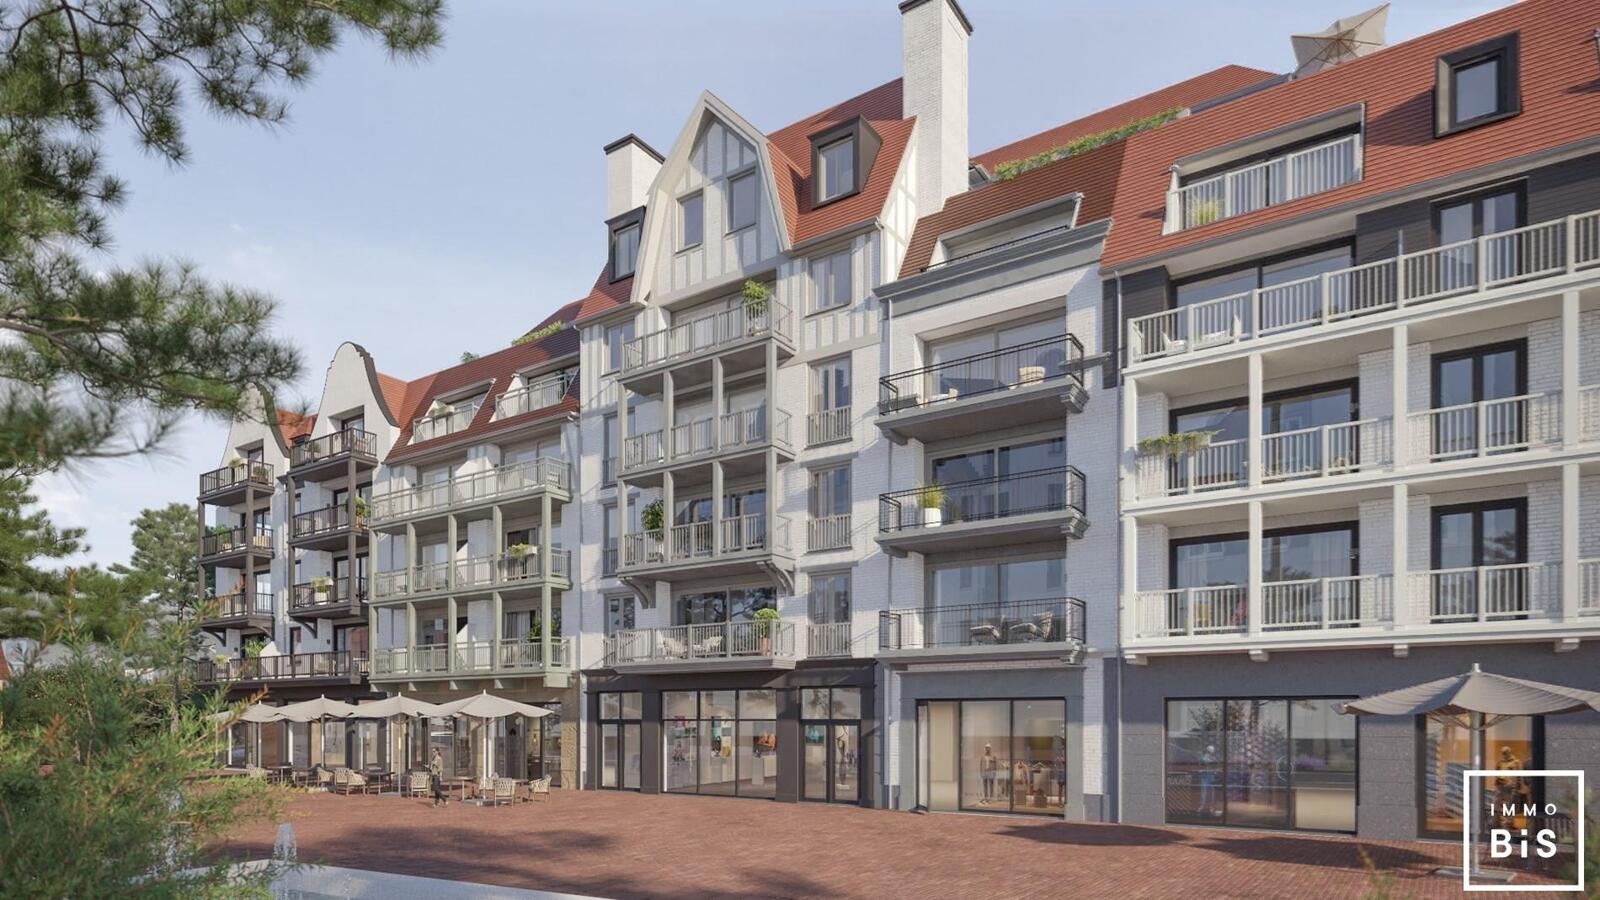 " Appartement villa moderne avec terrasse sur la Digue à Cadzand - Résidence Duinhof-Noord " 8